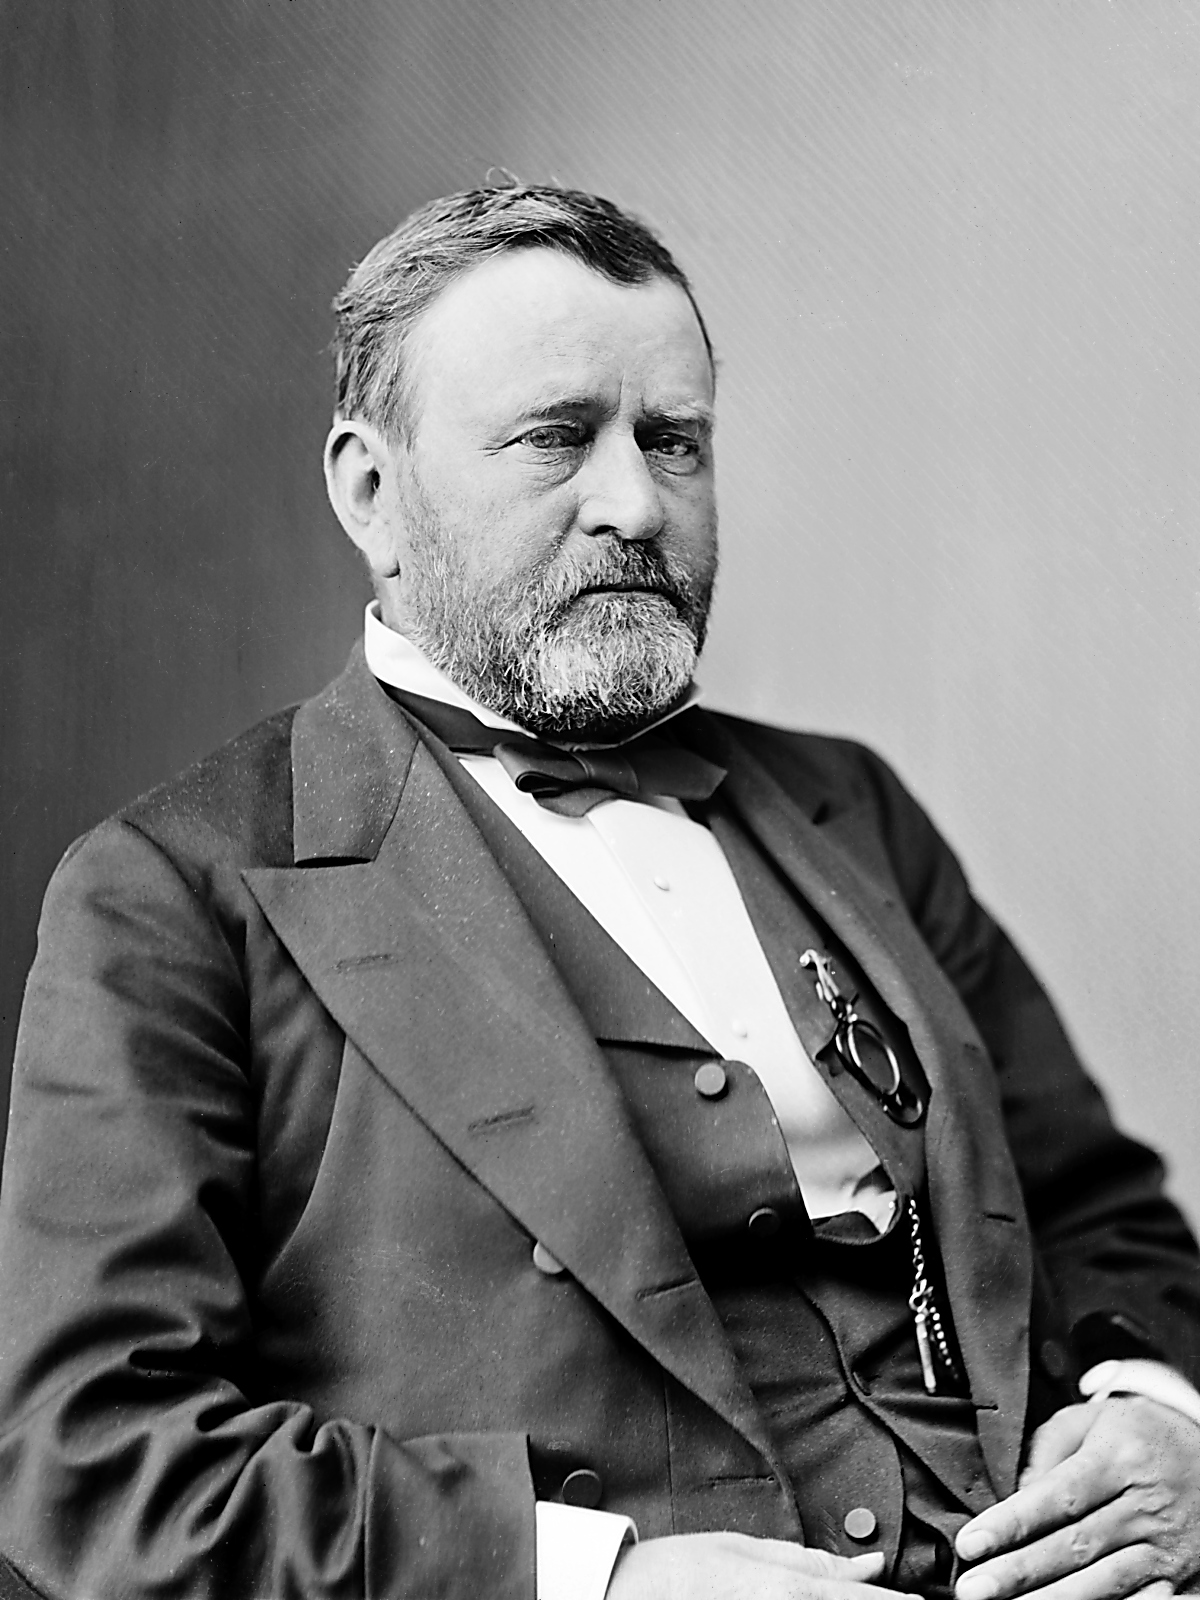 格蘭特 (Ulysses S. Grant) 在1869年至1877年擔任美國第18任總統